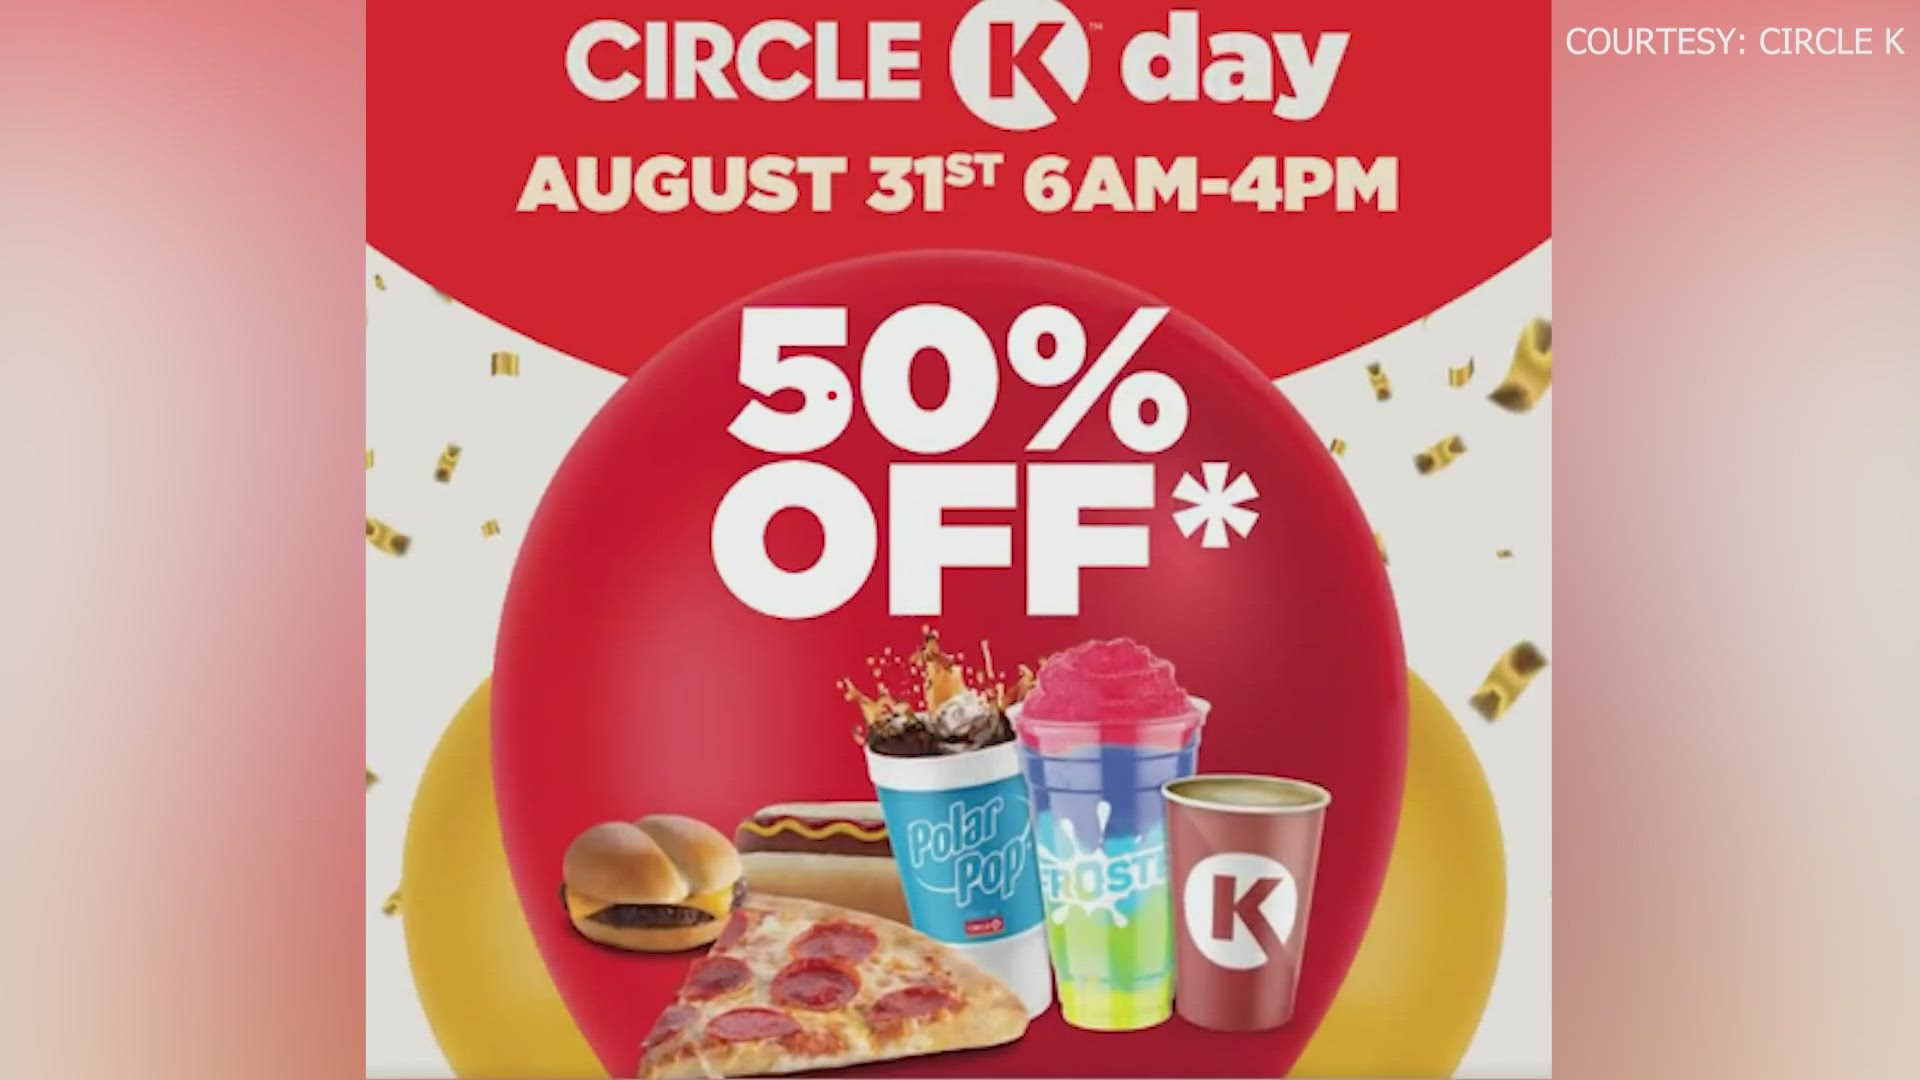 Circle K offering free coffee starting September 25